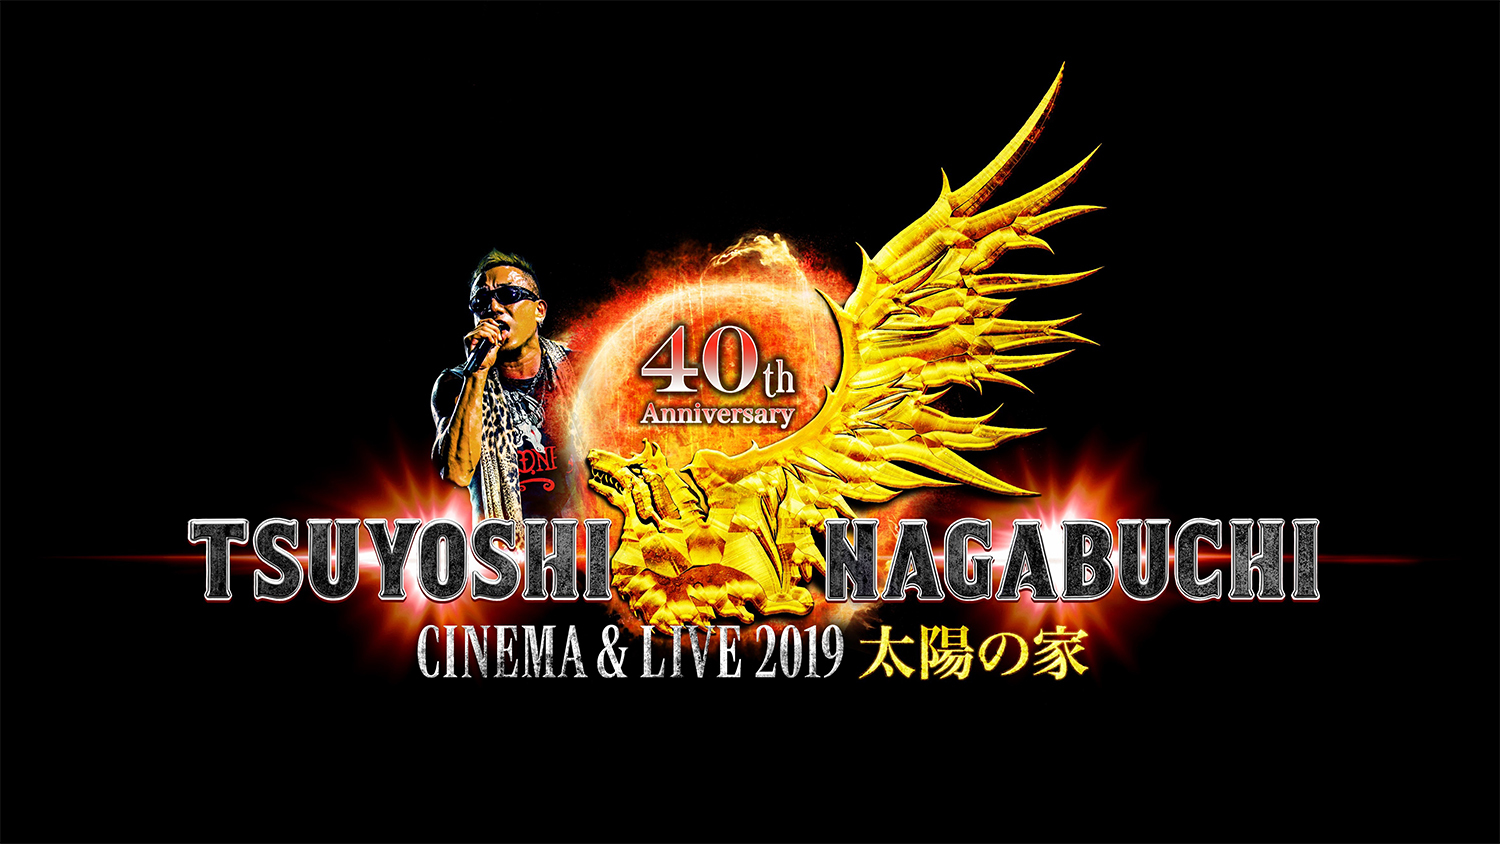 長渕剛、『TSUYOSHI NAGABUCHI CINEMA  LIVE 2019 太陽の家』に先駆けて特別ダイジェスト上映＆プレミアムライブが決定  | SPICE - エンタメ特化型情報メディア スパイス